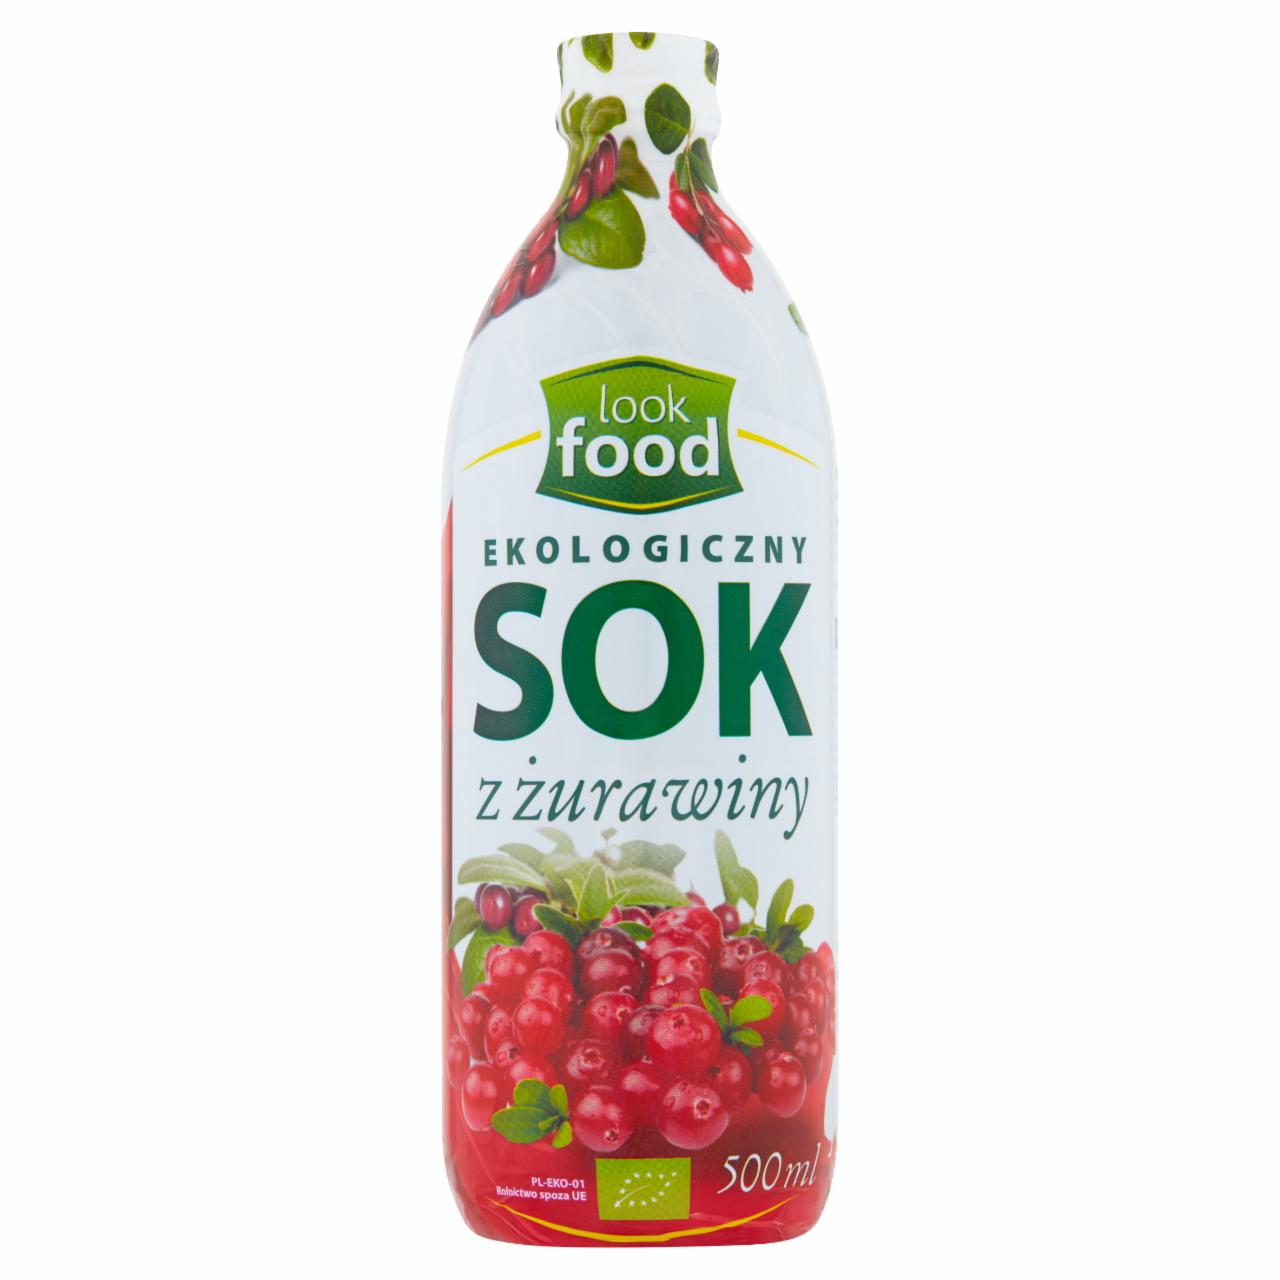 Zdjęcia - Look Food Ekologiczny sok z żurawiny 500 ml